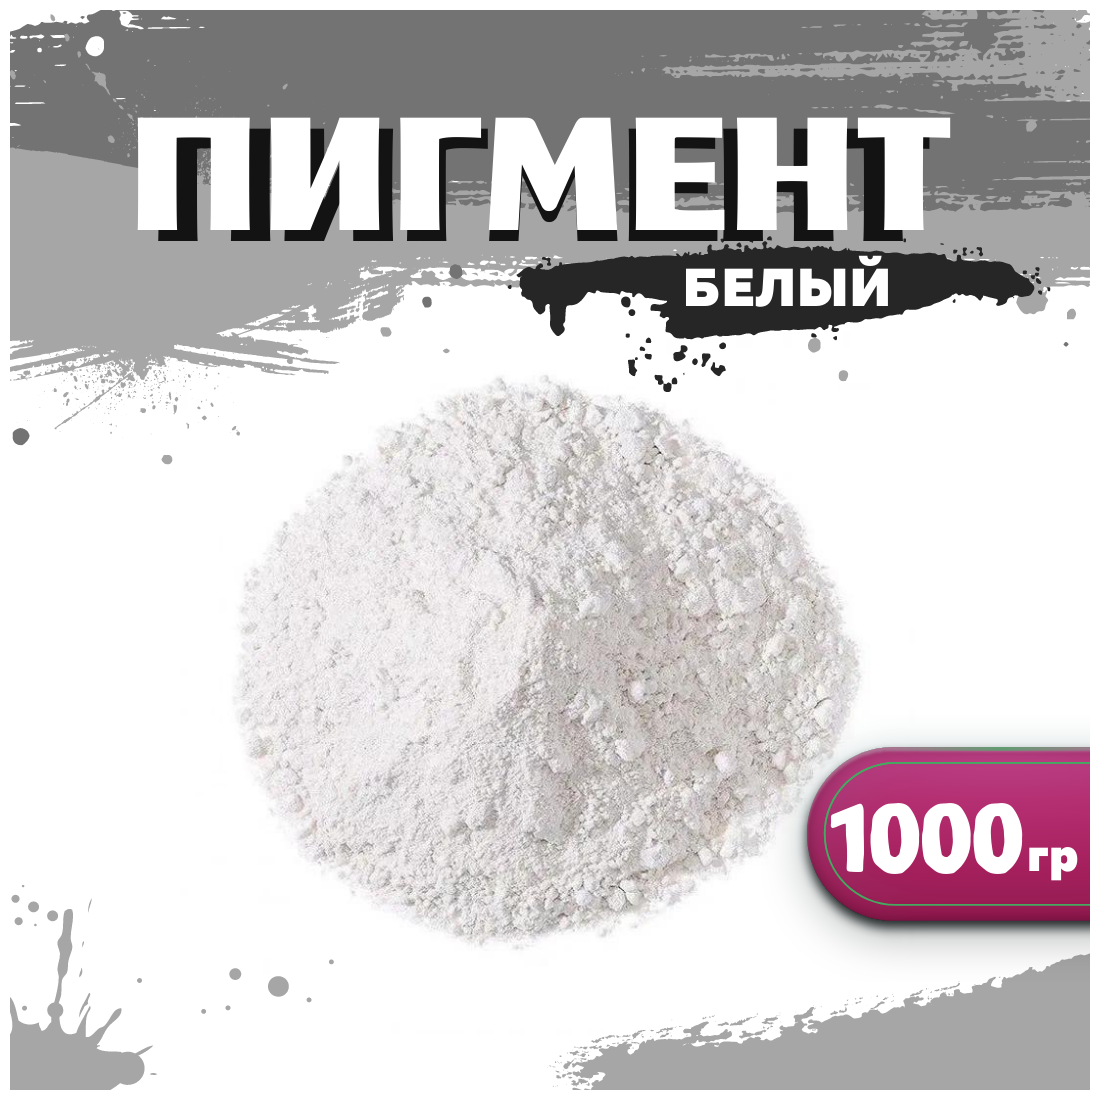 Диоксид титана R 6628 супер белый для гипса, бетона, ЛКМ, декора, 1000г